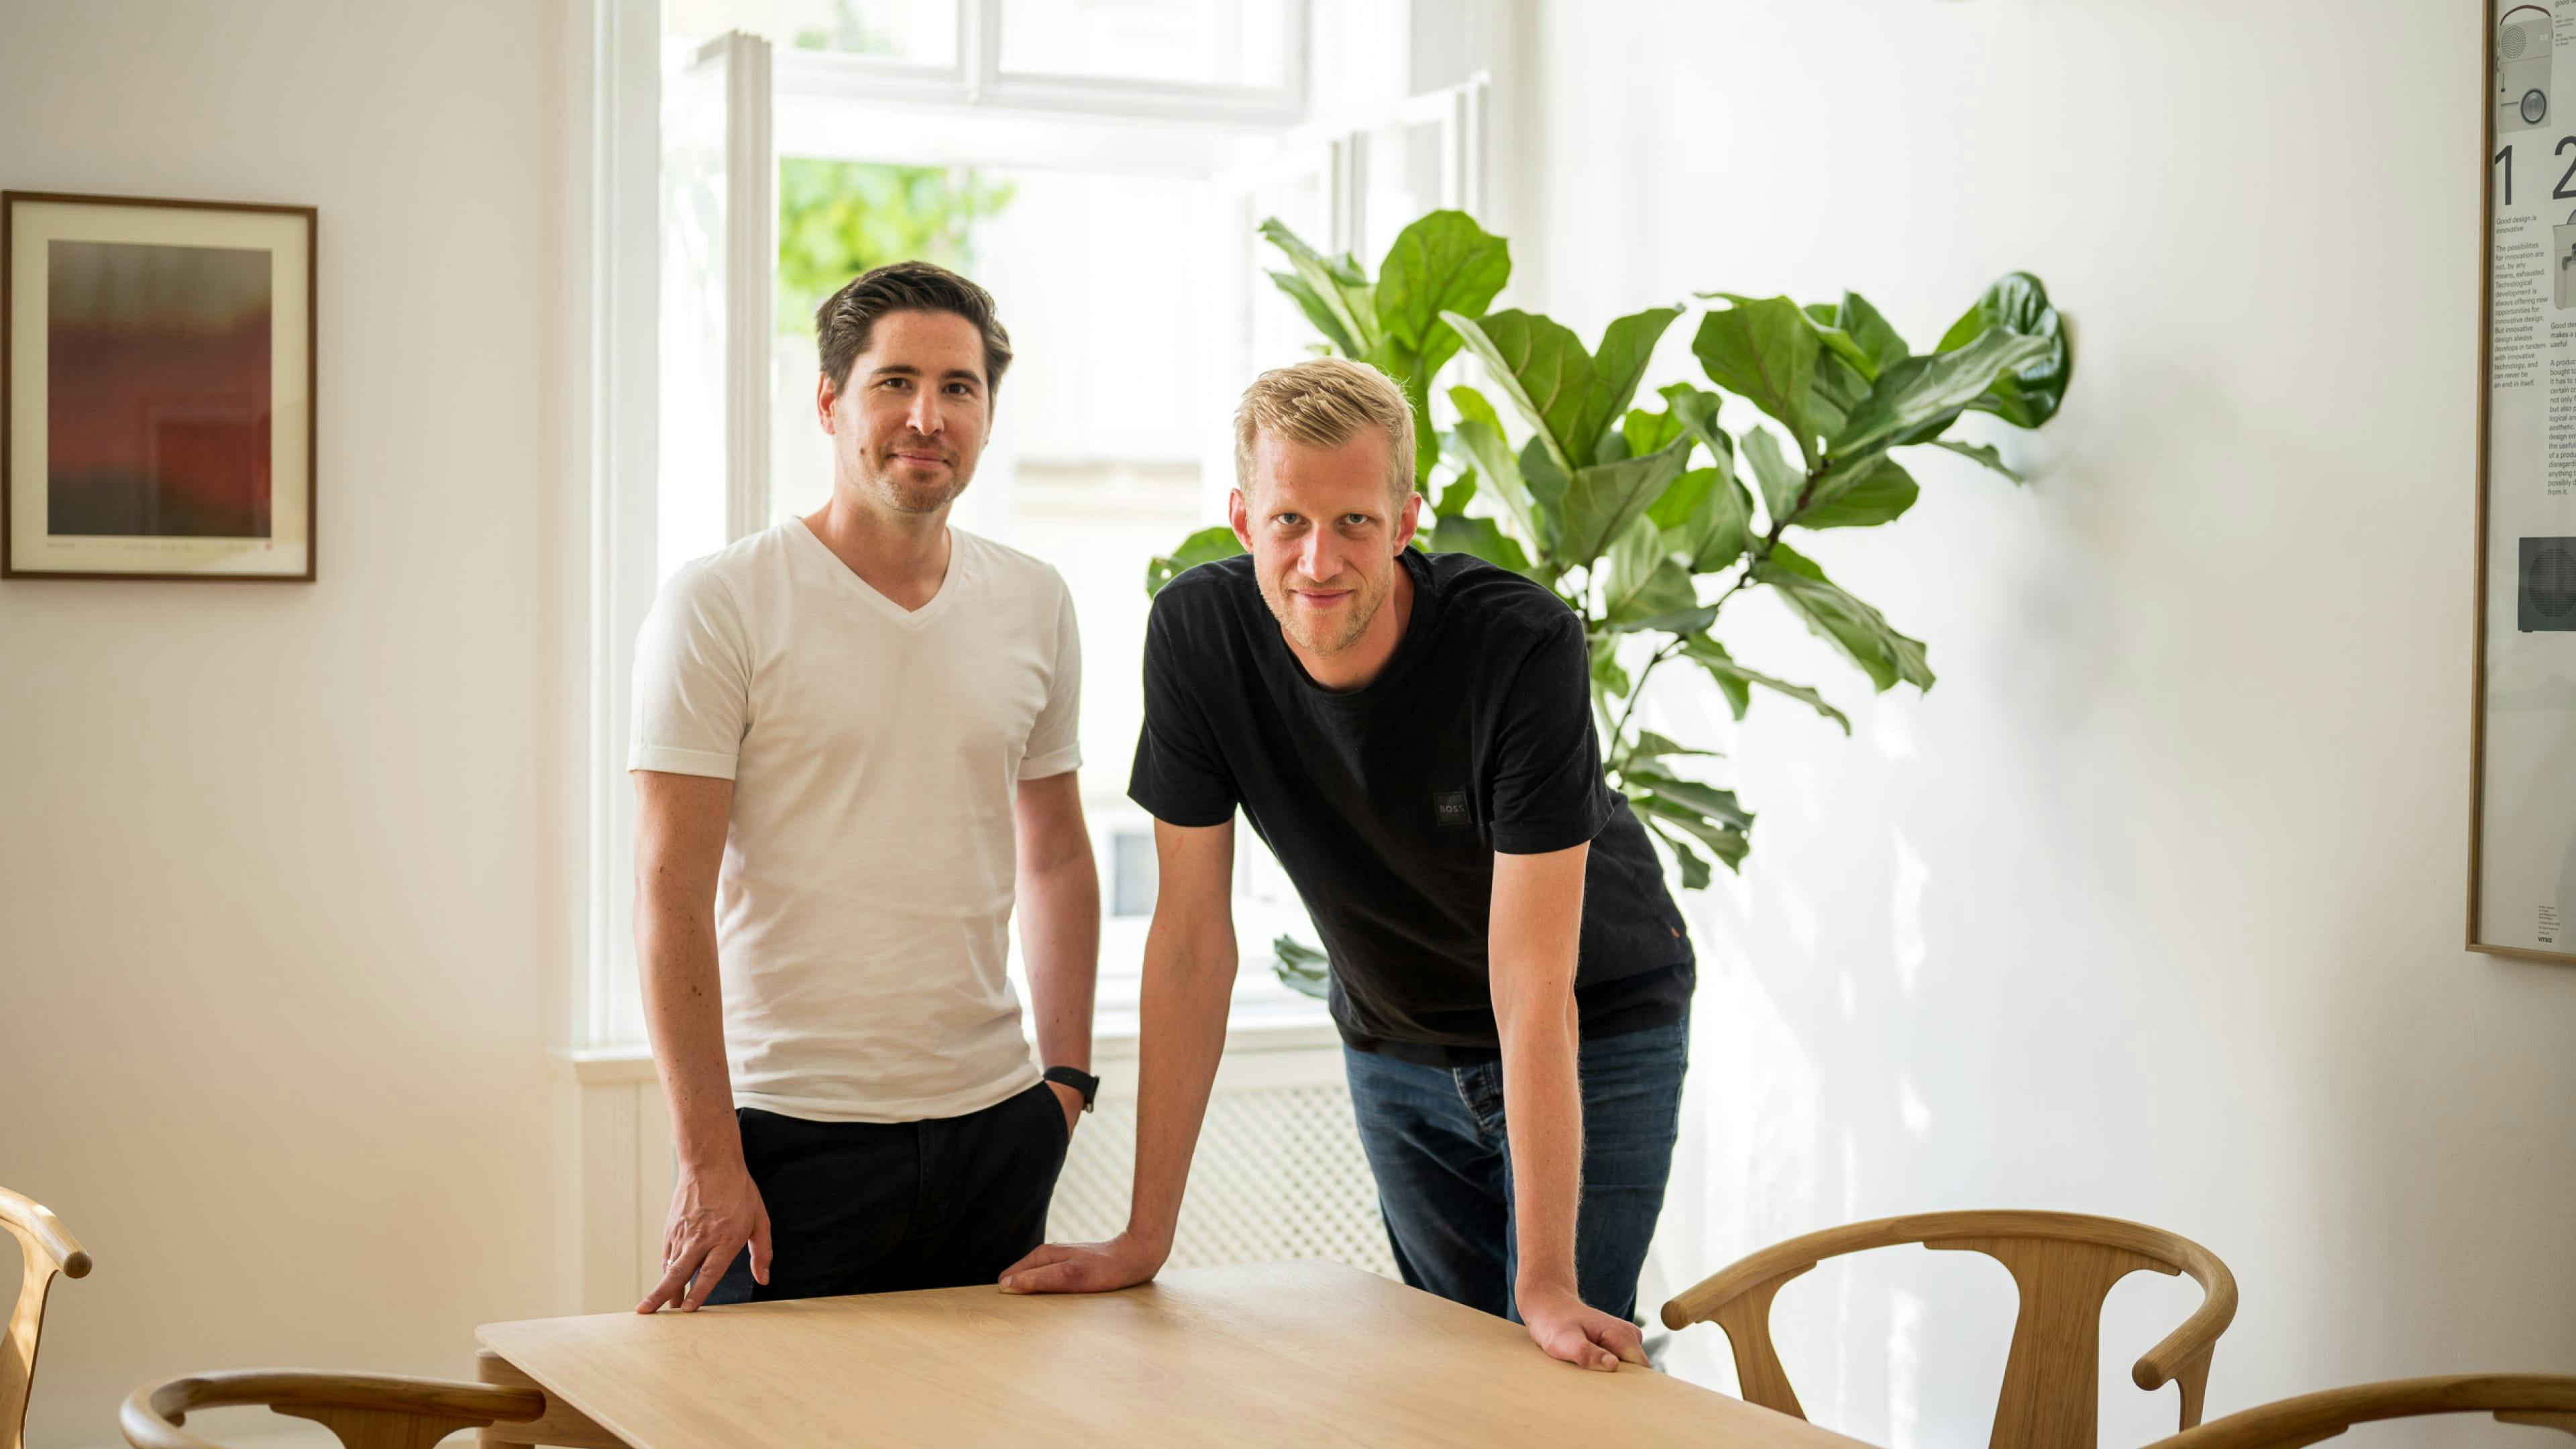 Functn digital agency founders Christop Peter and Philip Ehrenfellner.